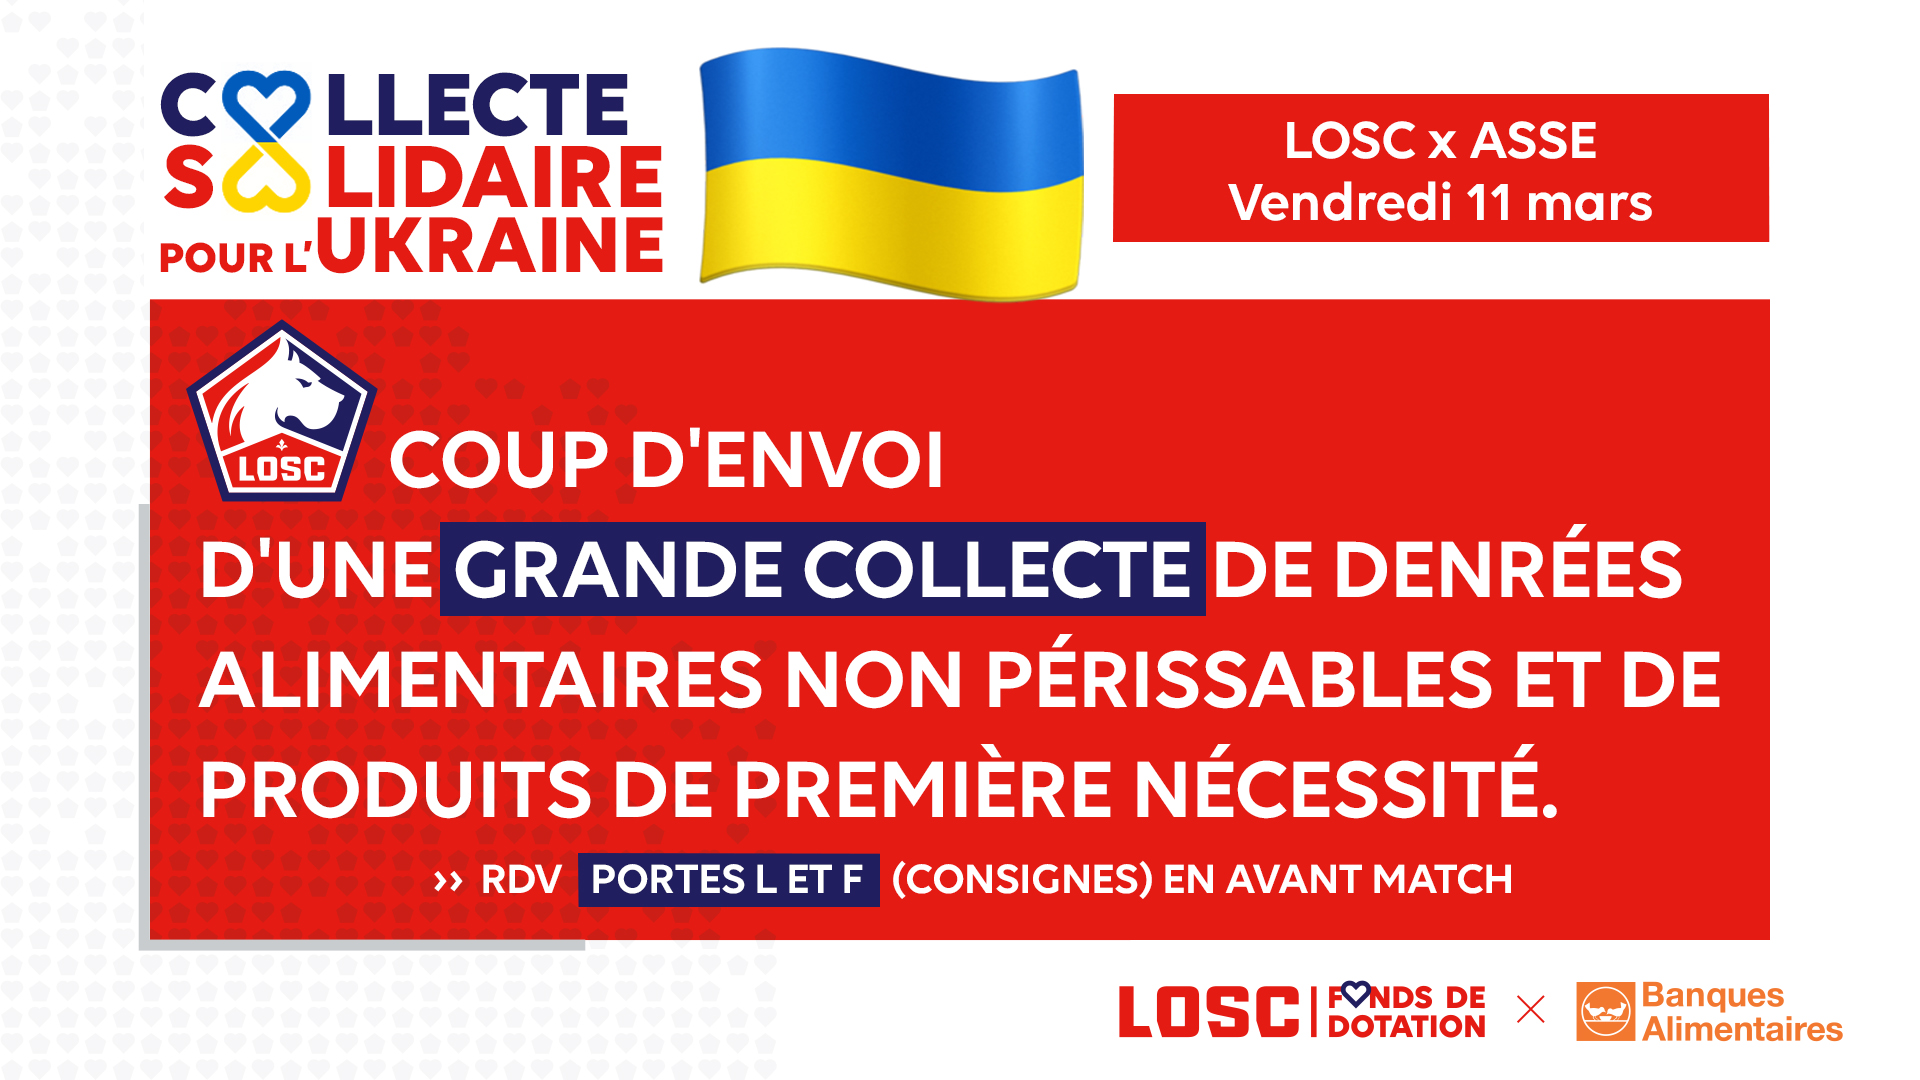 20220307-LOSC-RSE-Collecte UKRAINE - 16x9-v5.jpg